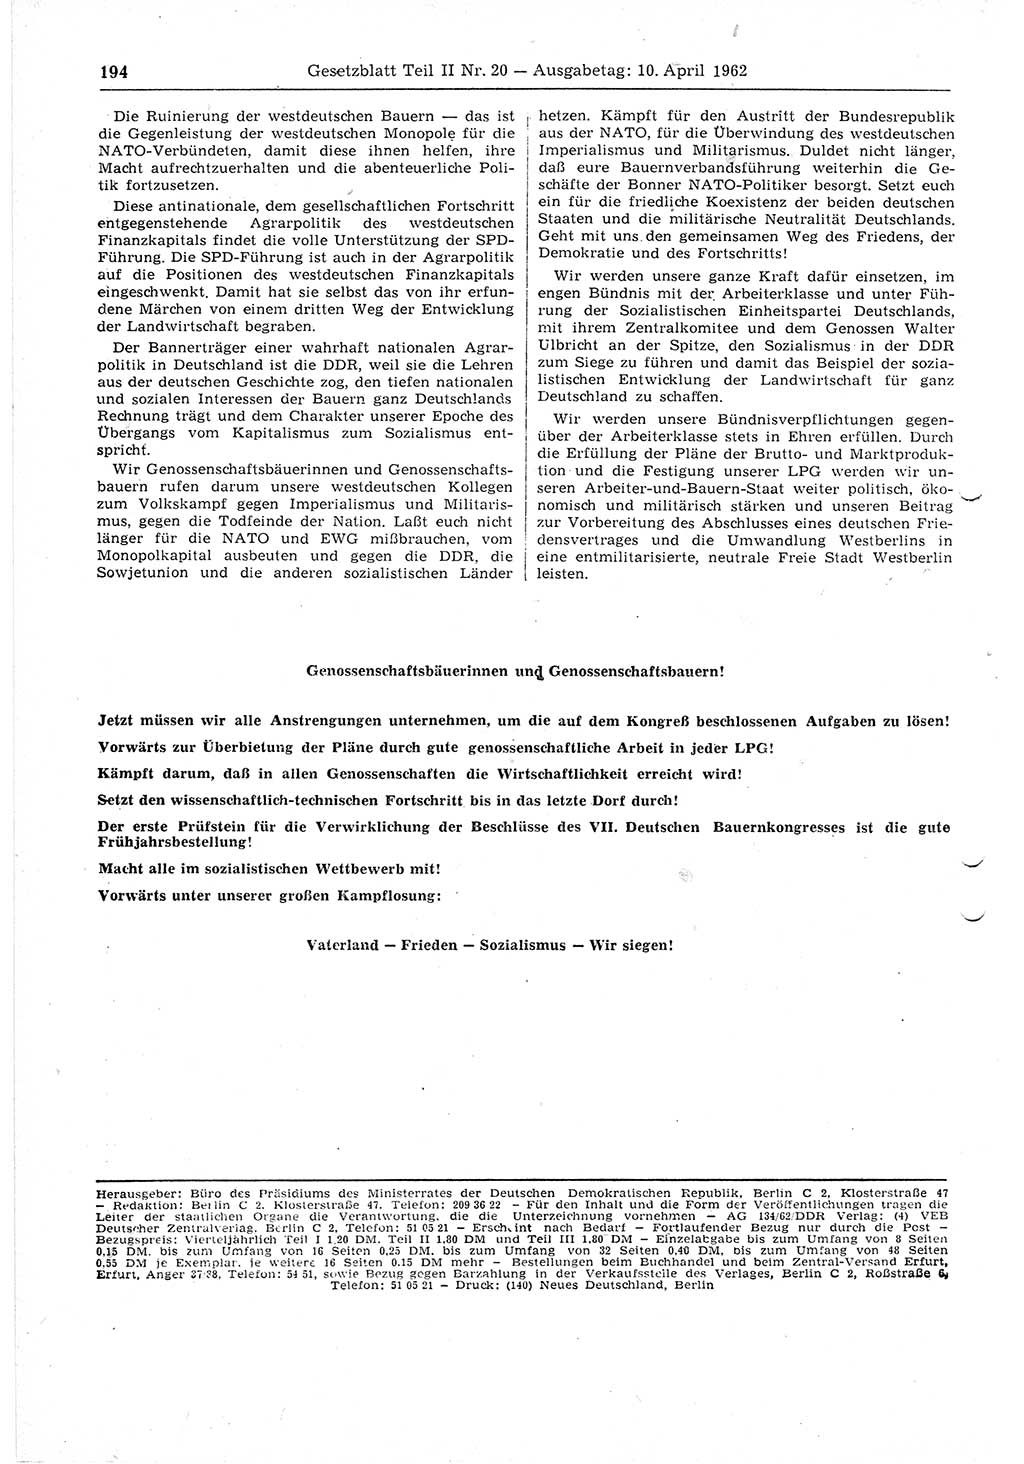 Gesetzblatt (GBl.) der Deutschen Demokratischen Republik (DDR) Teil ⅠⅠ 1962, Seite 194 (GBl. DDR ⅠⅠ 1962, S. 194)